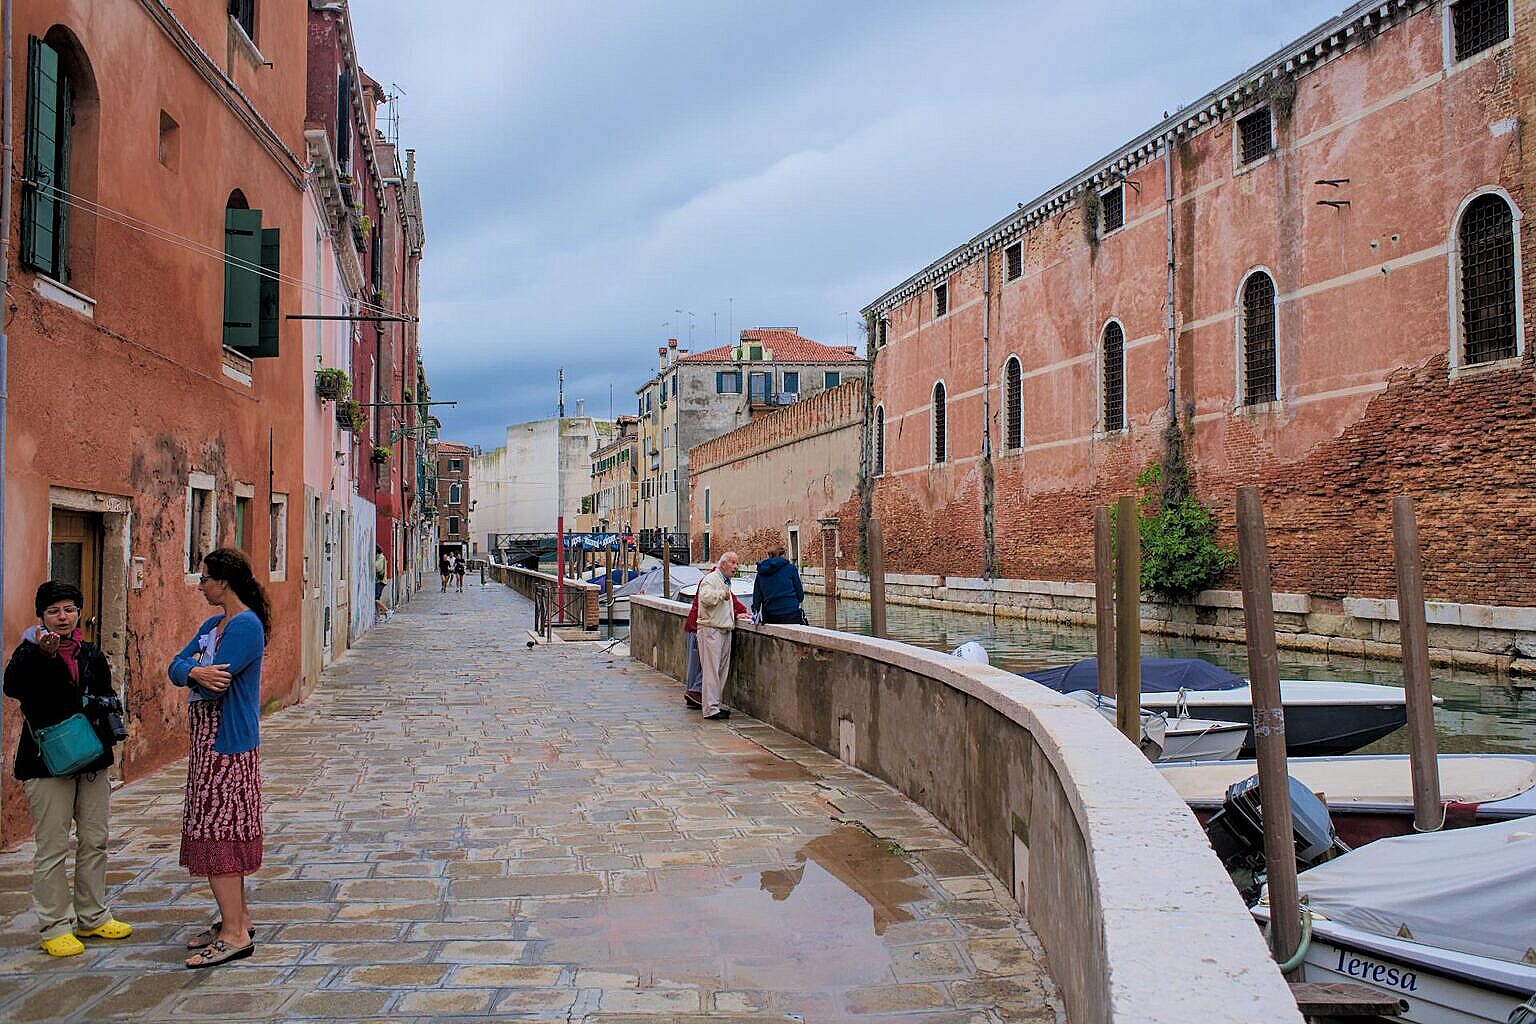 Fondamenta and Rio de la Tana, Castello, Venice